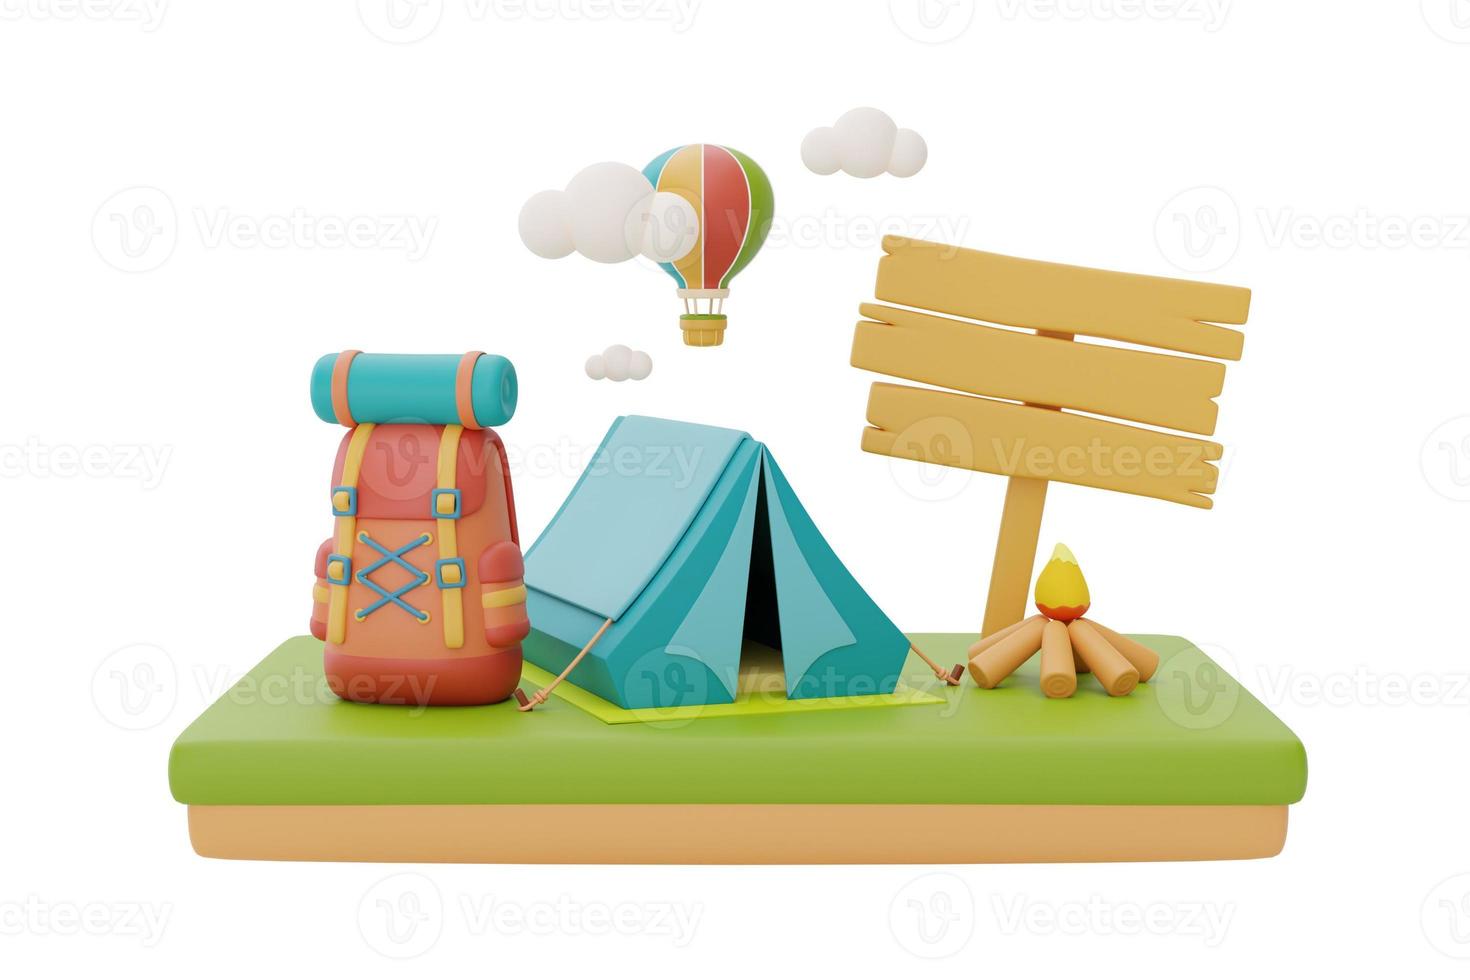 touristisches Campingzelt und Lagerfeuer mit Rucksack und hölzernem Wegweiser, Sommerlagerkonzept, 3D-Darstellung. foto